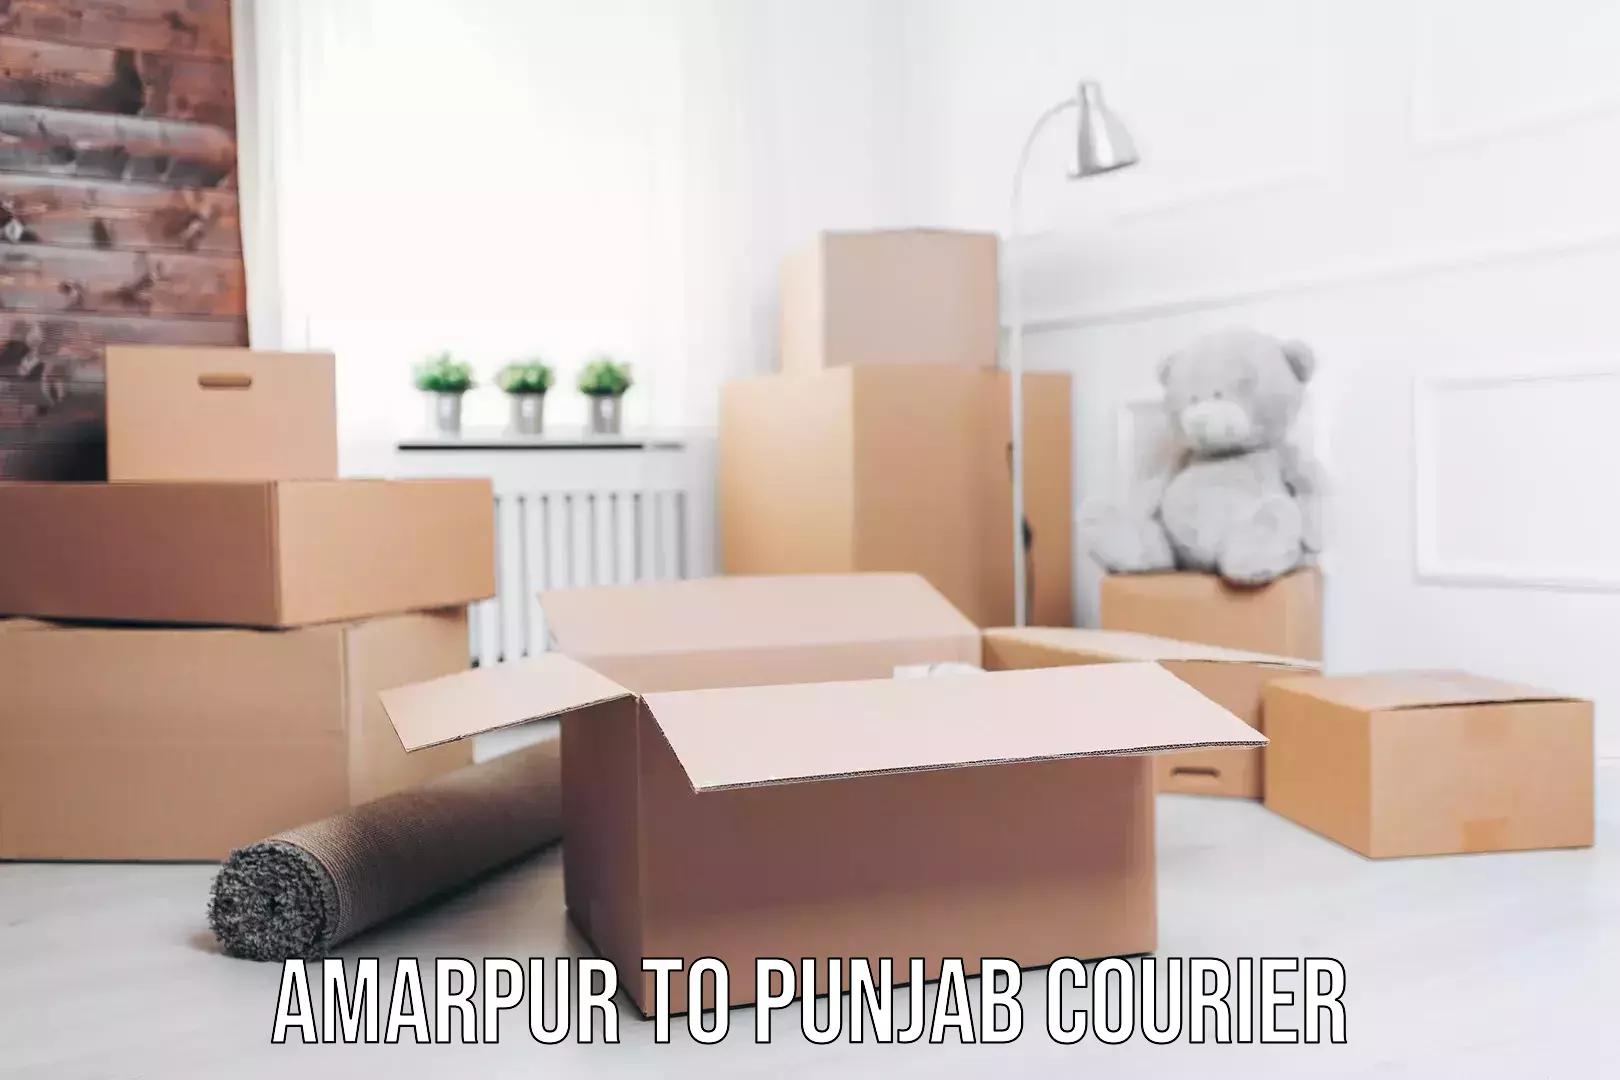 Efficient cargo services Amarpur to Punjab